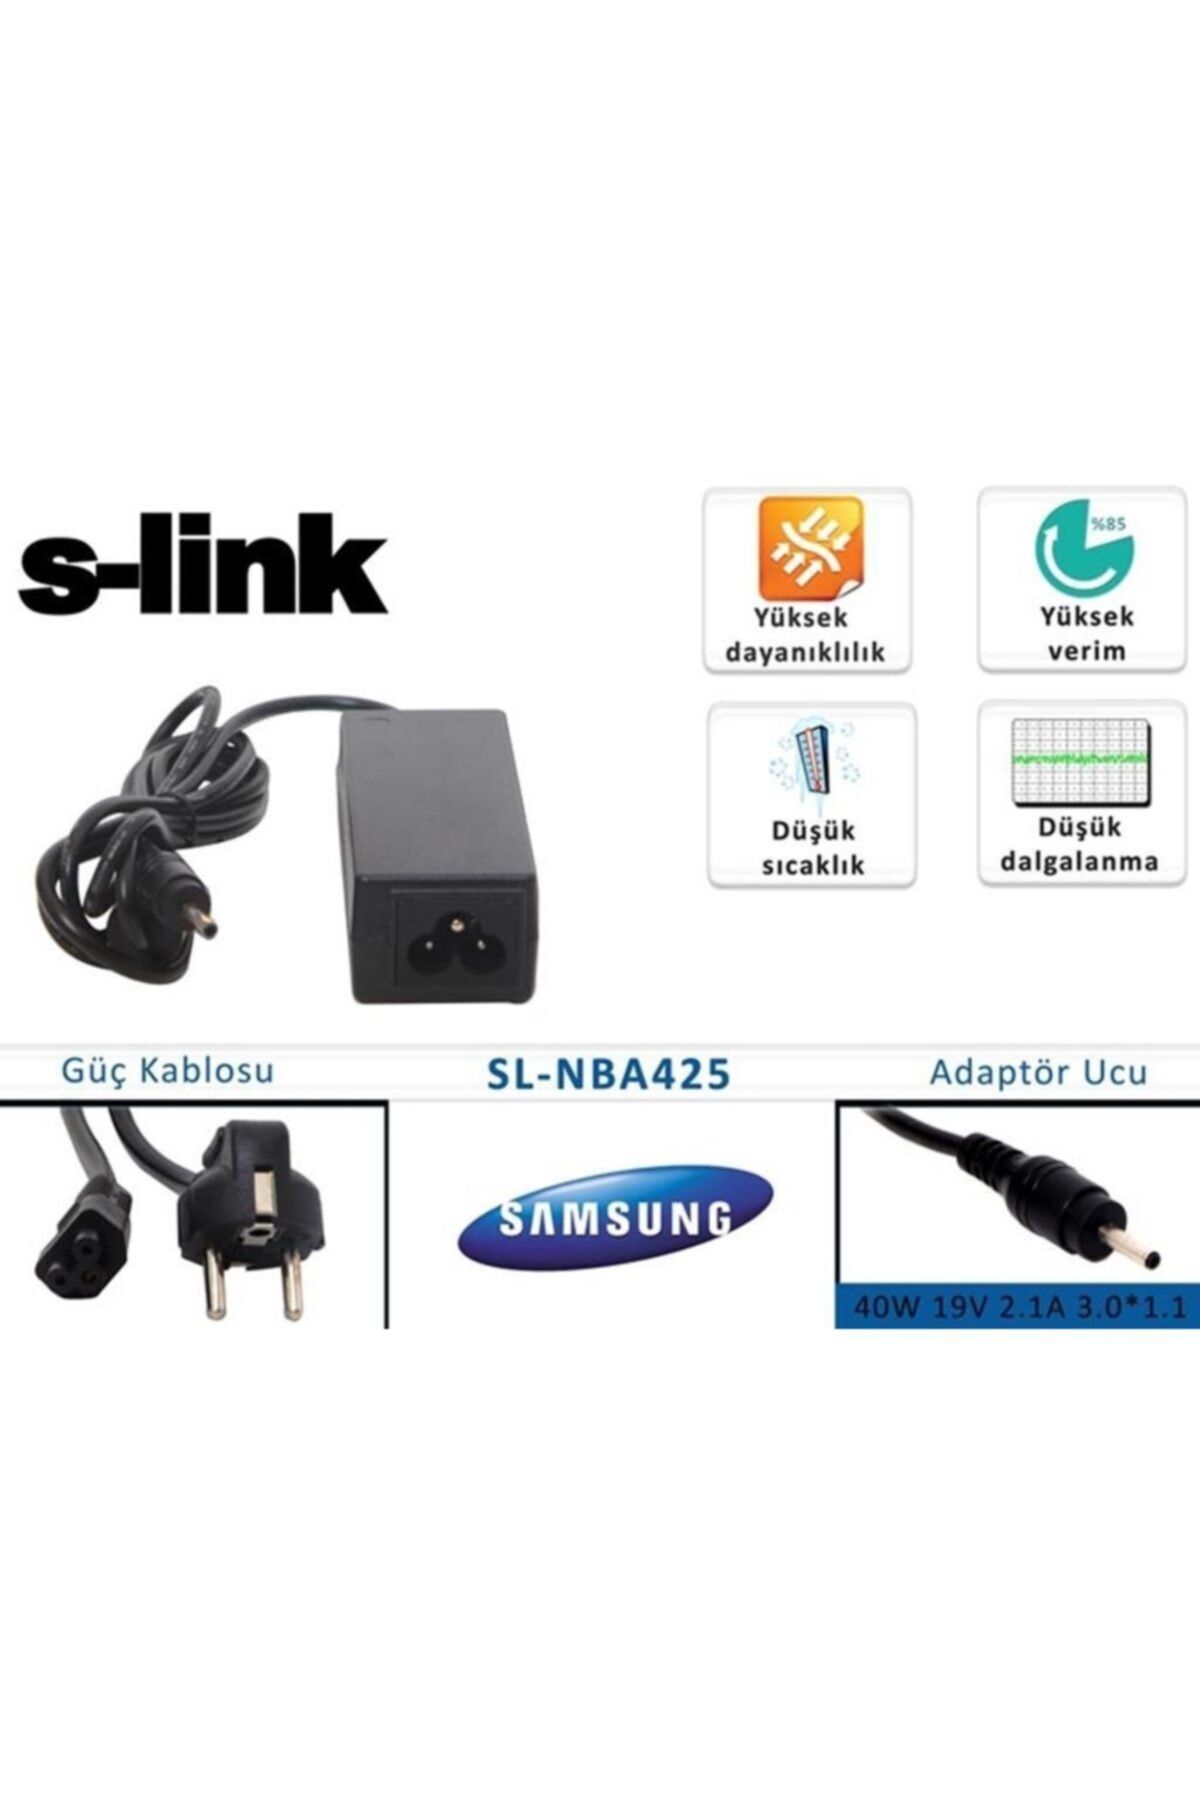 S-Link Sl-nba425 40w 19v 2.1a 3.0-1.1 Samsung Uyumlu